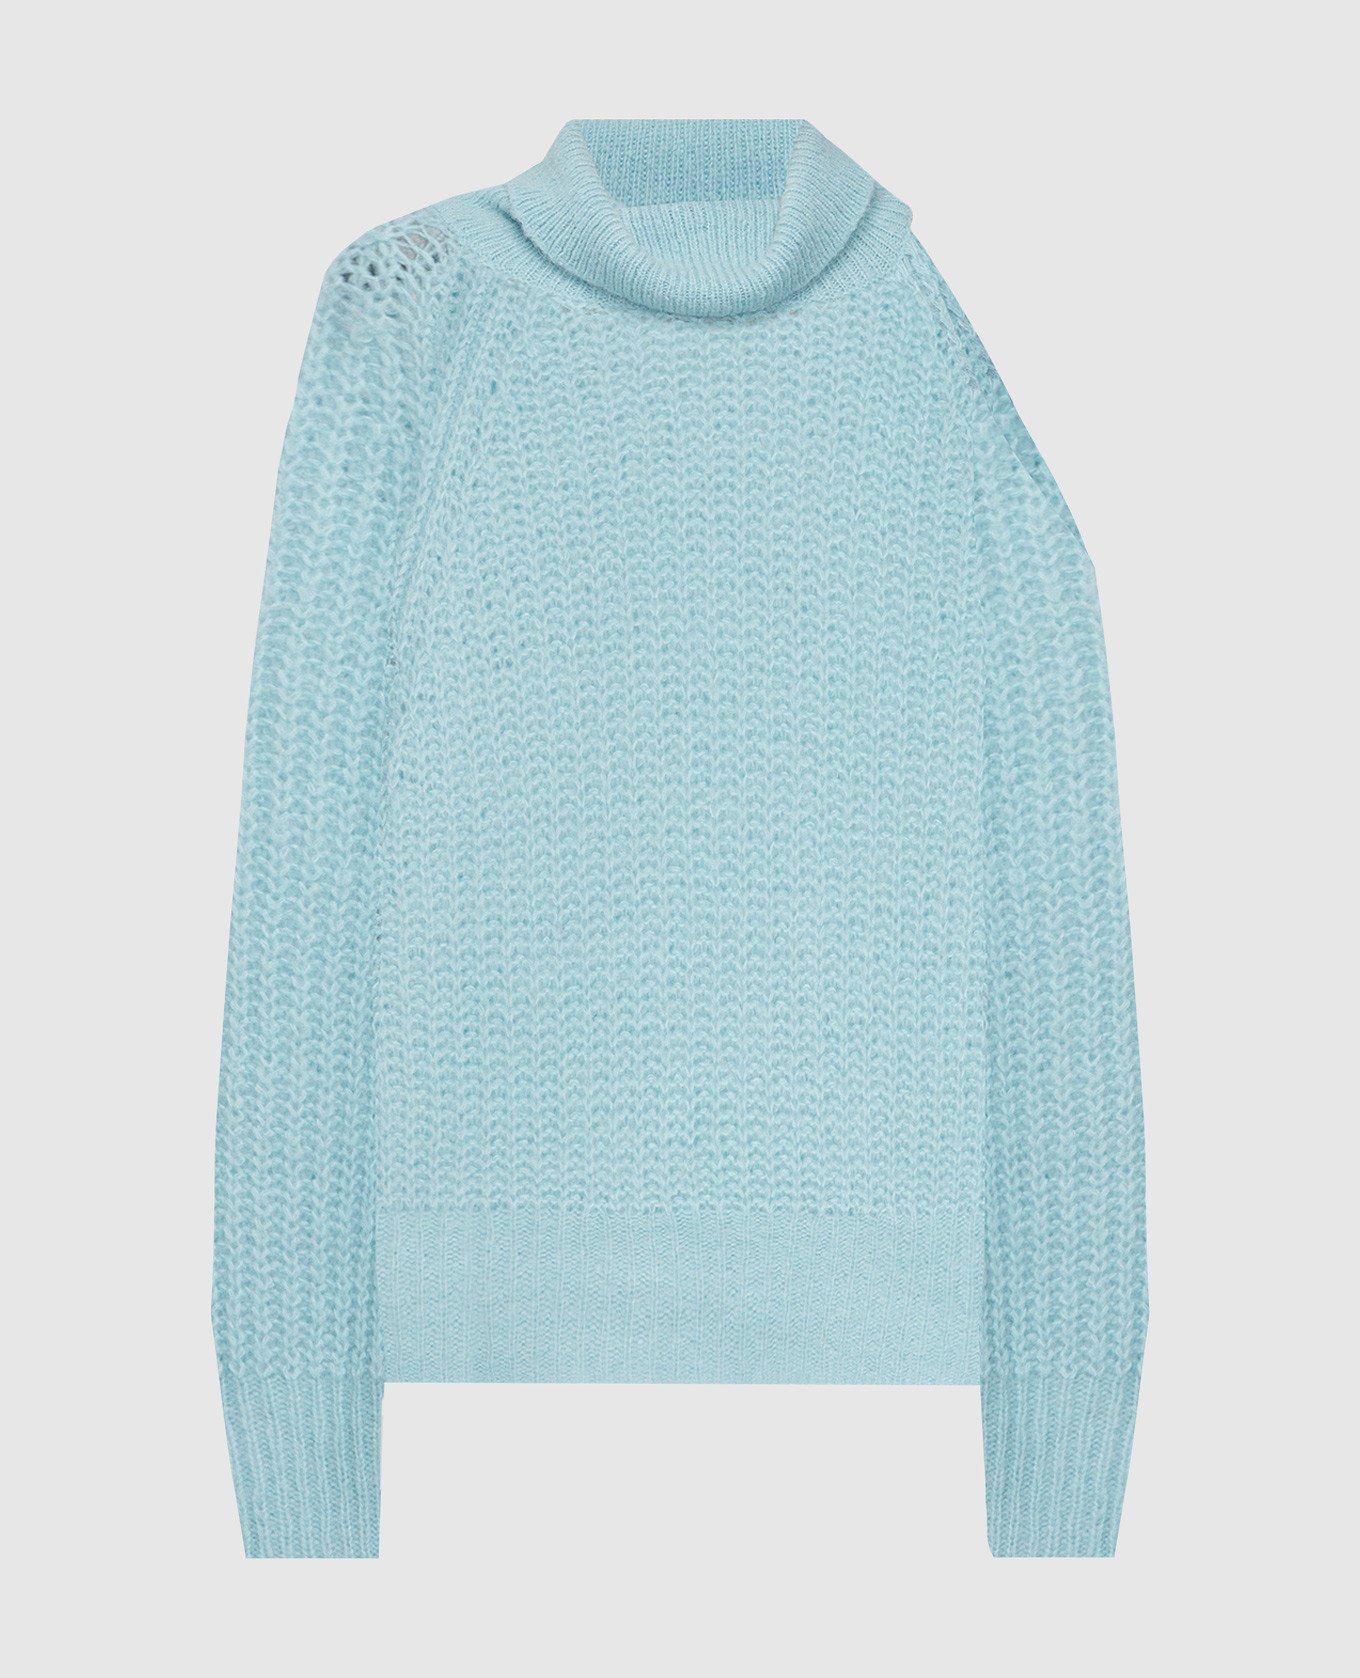 Blue Rialto sweater